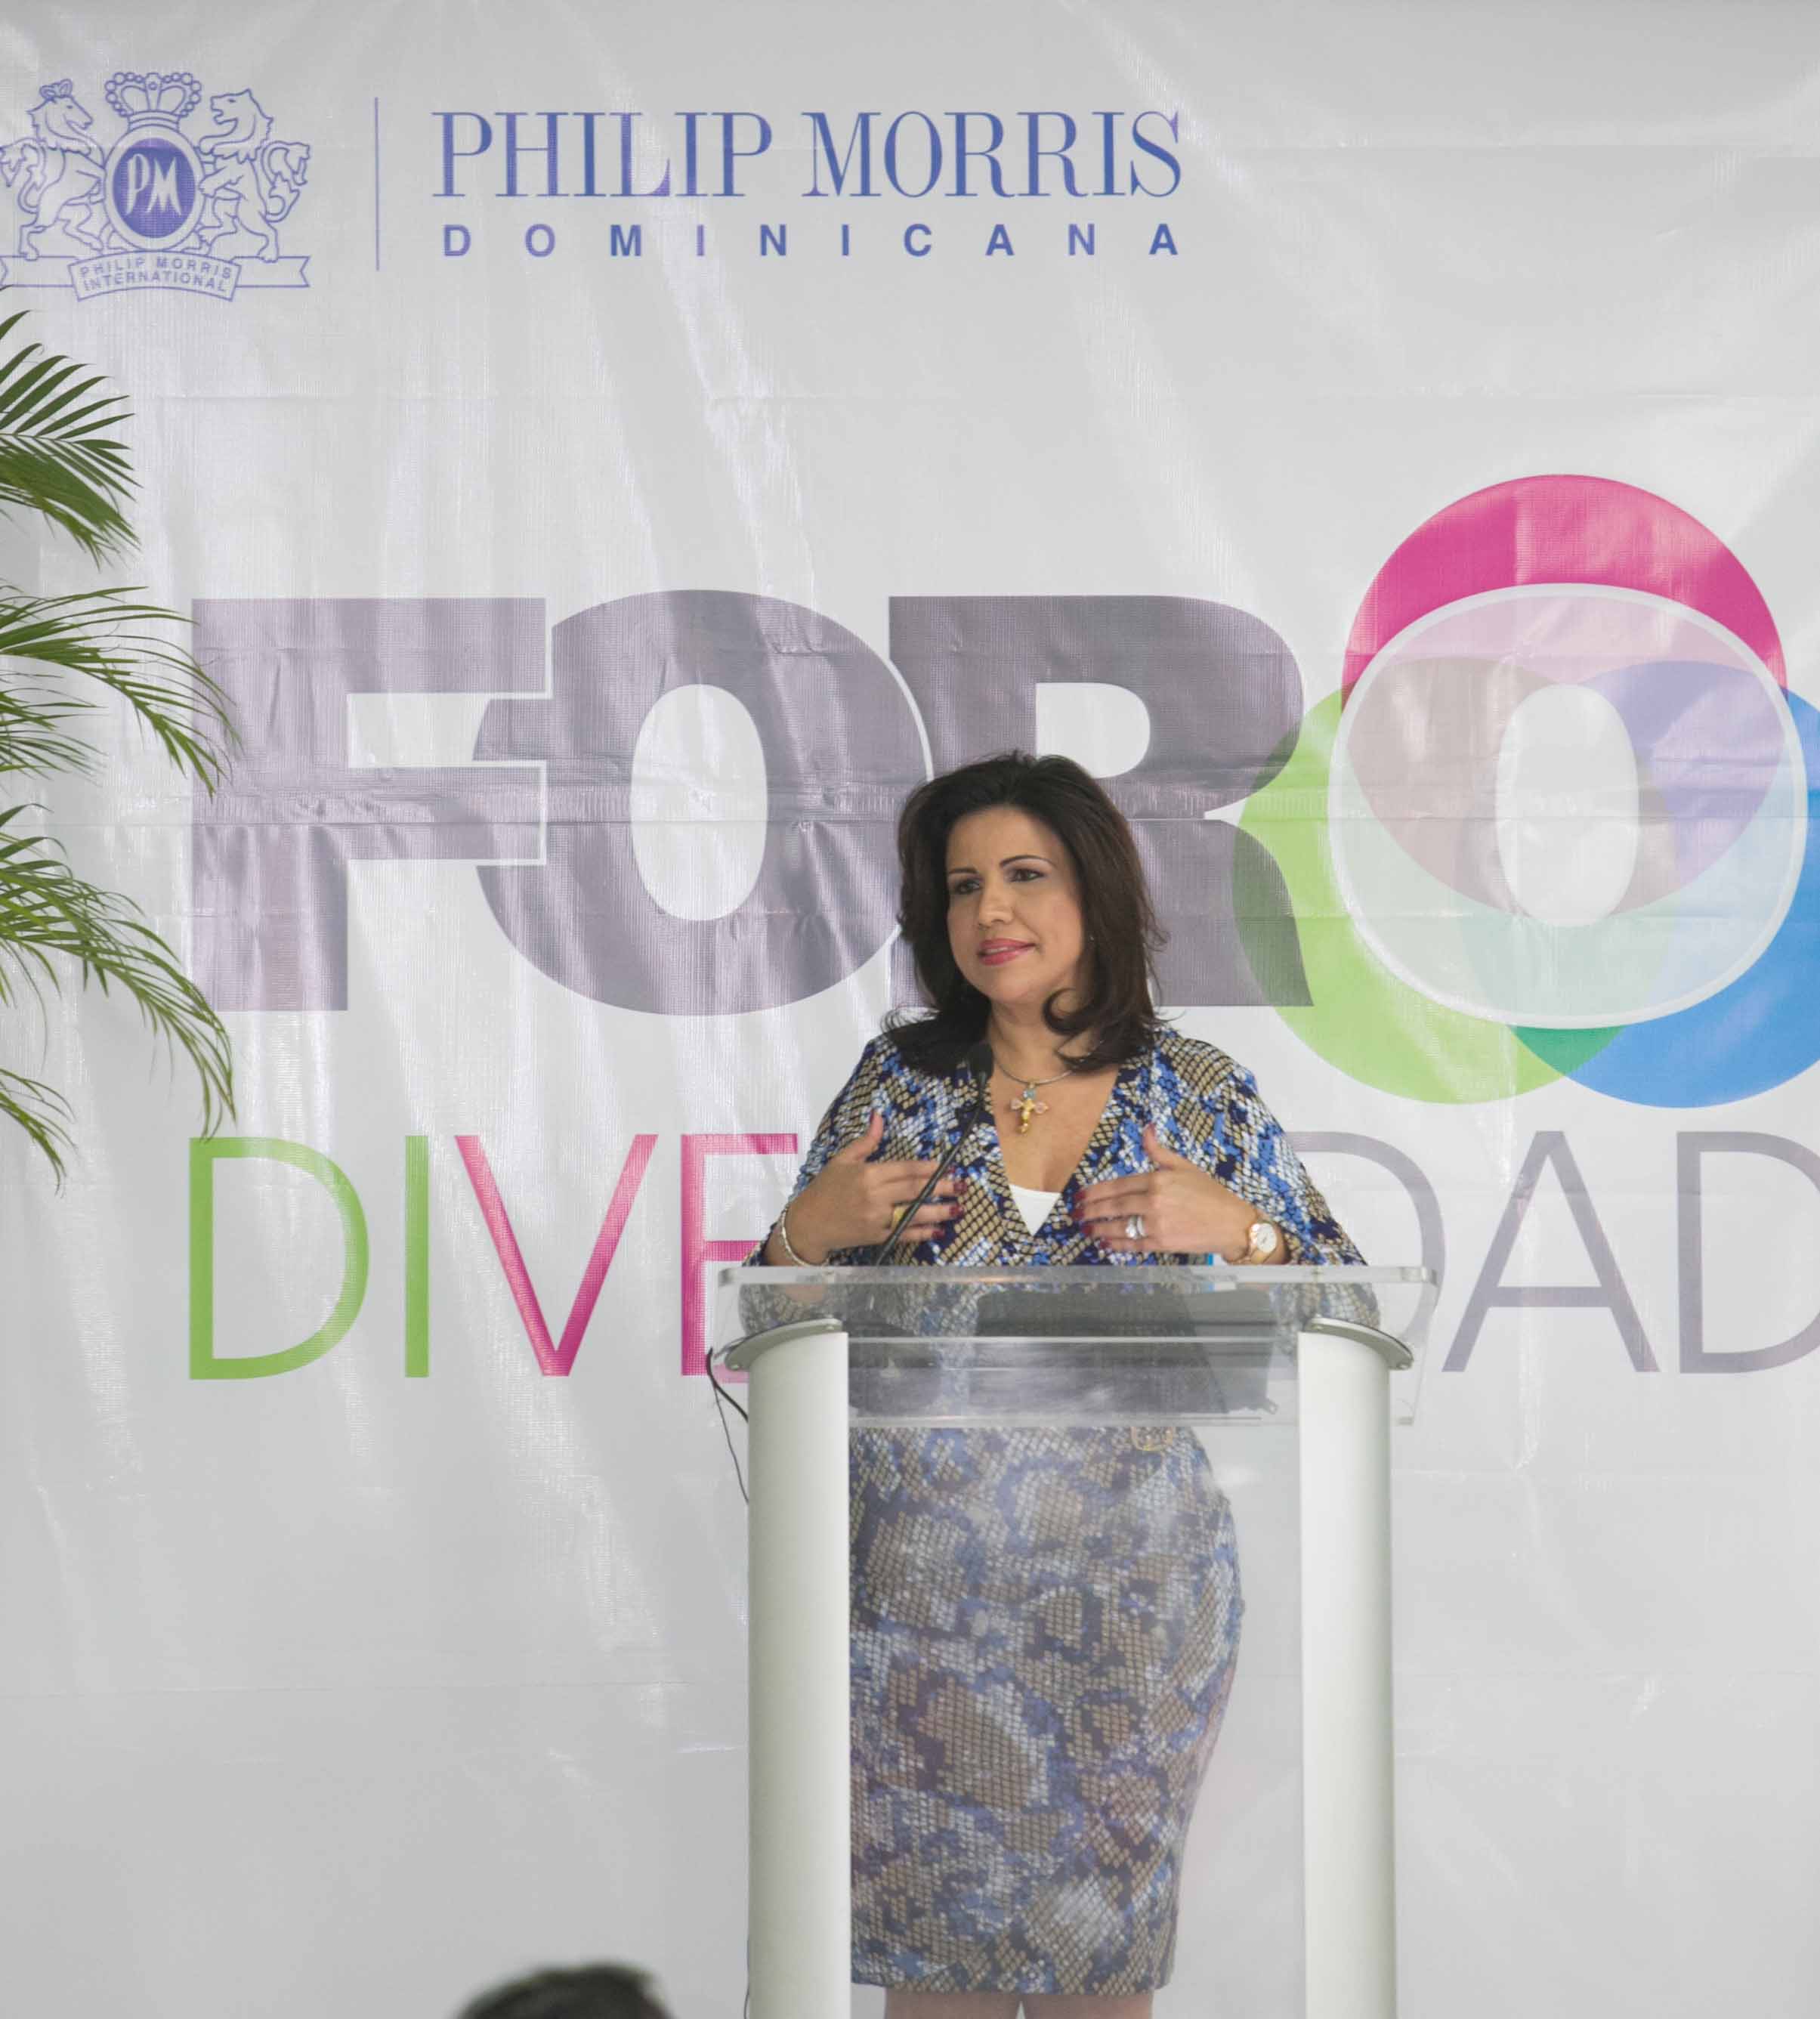 Vicepresidenta diserta en foro Philip Morris sobre rol de la mujer dominicana